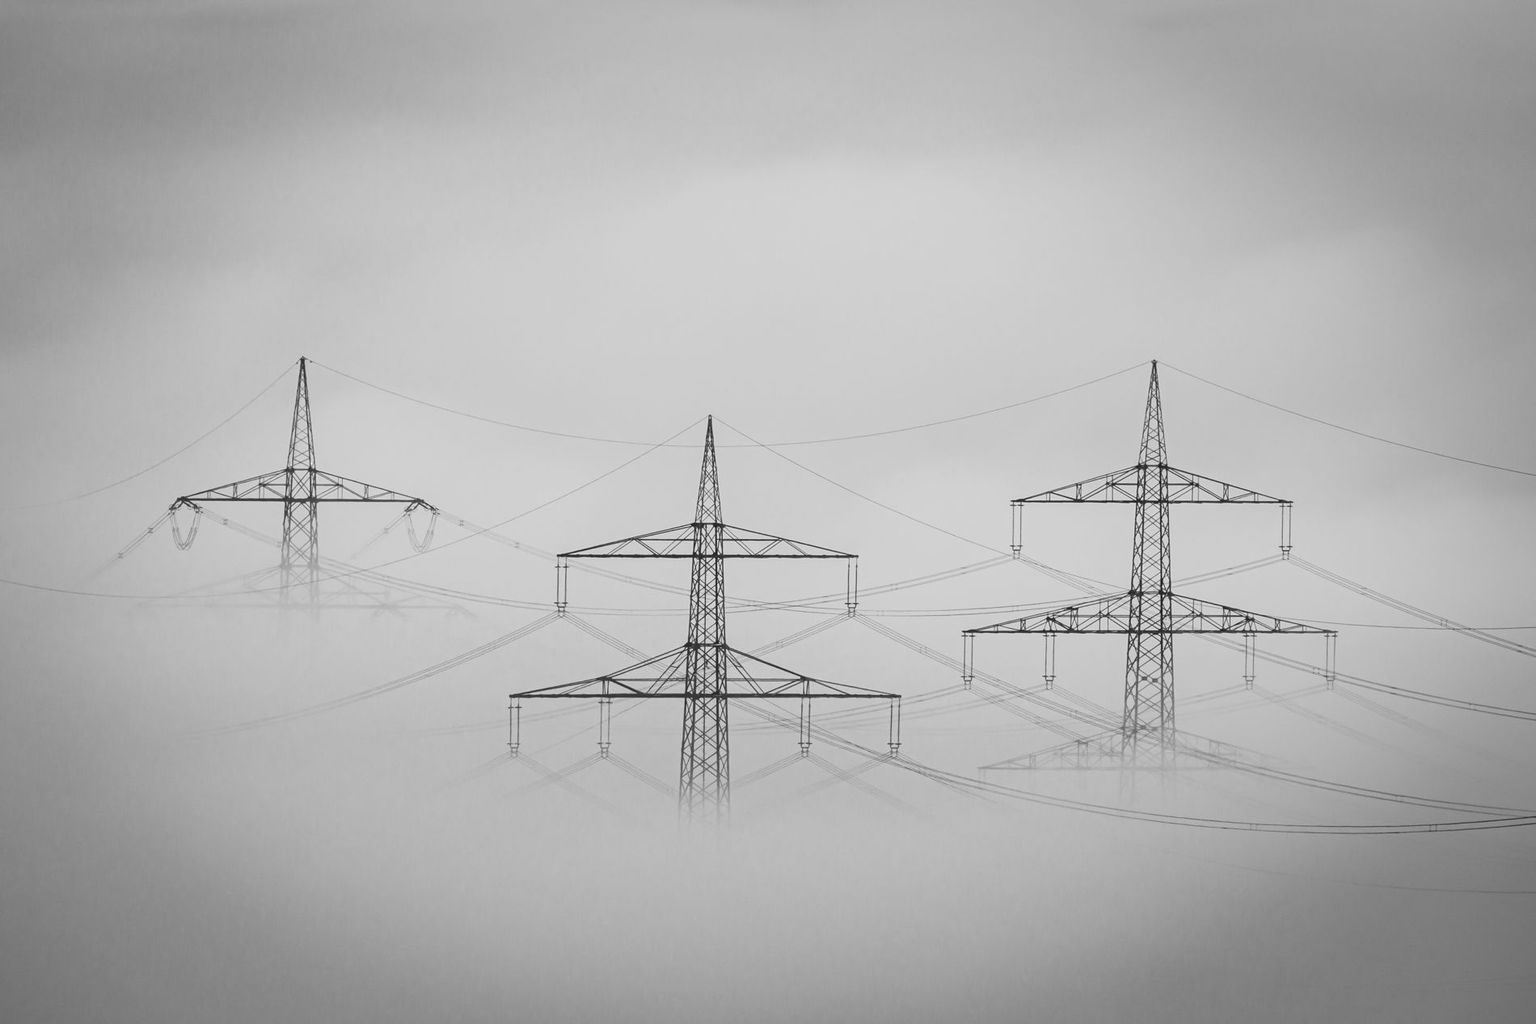 Un accord sur l’électricité avec l’Union européenne est-il en vue ? Pour la sécurité de son approvisionnement, mais aussi pour la réalisation de l’objectif de zéro émission nette, la Suisse a besoin de bonnes relations avec ses voisins. Image: Pixabay